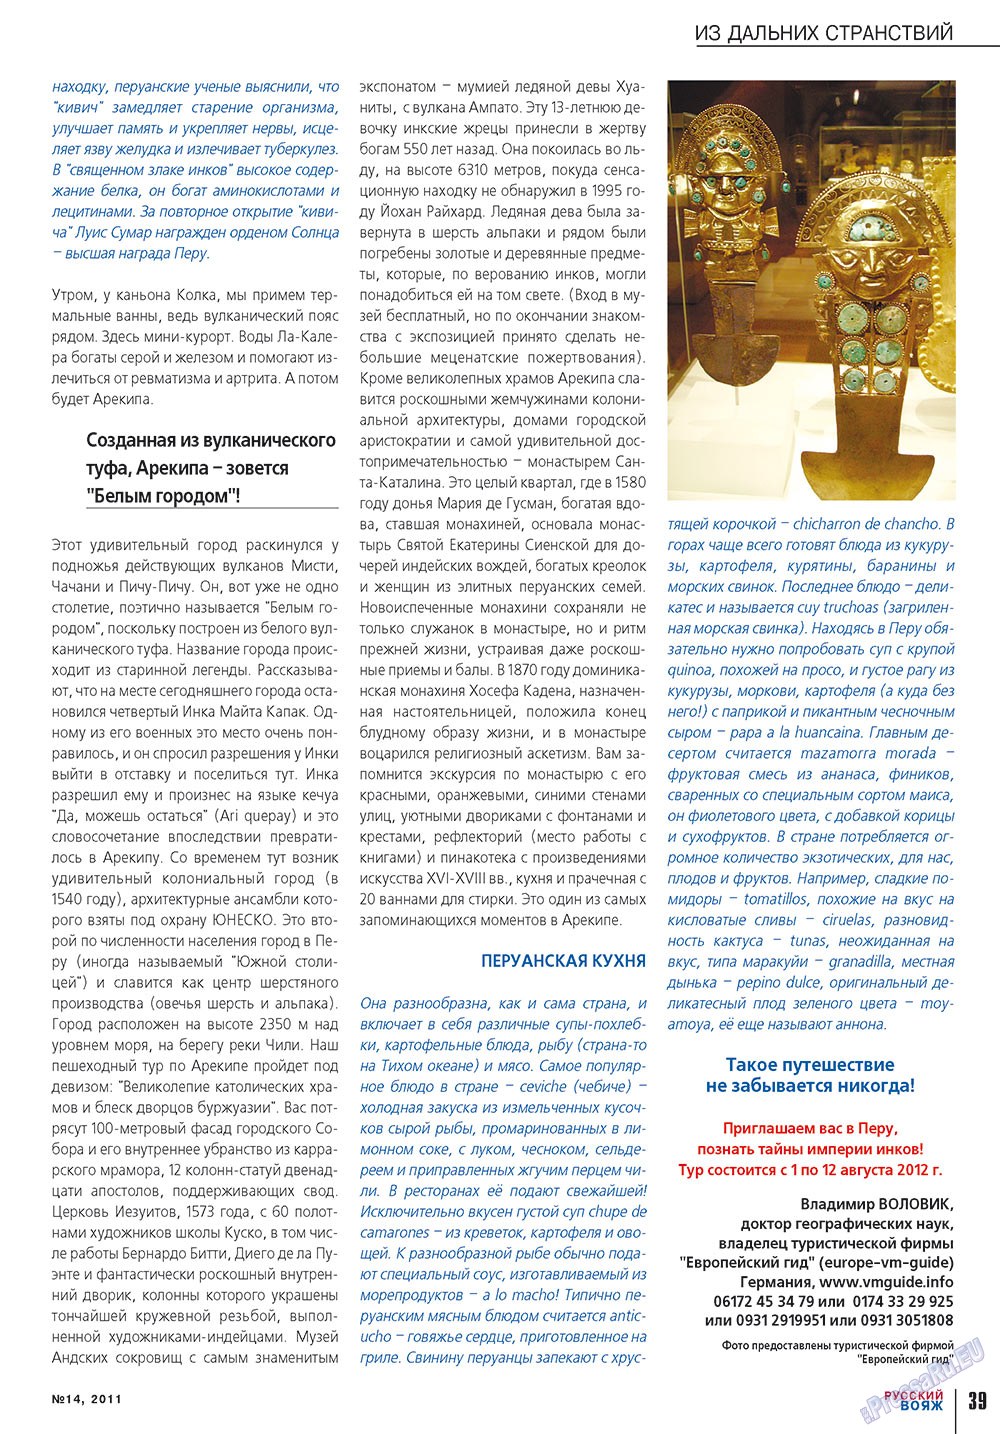 Русский вояж (журнал). 2011 год, номер 14, стр. 39